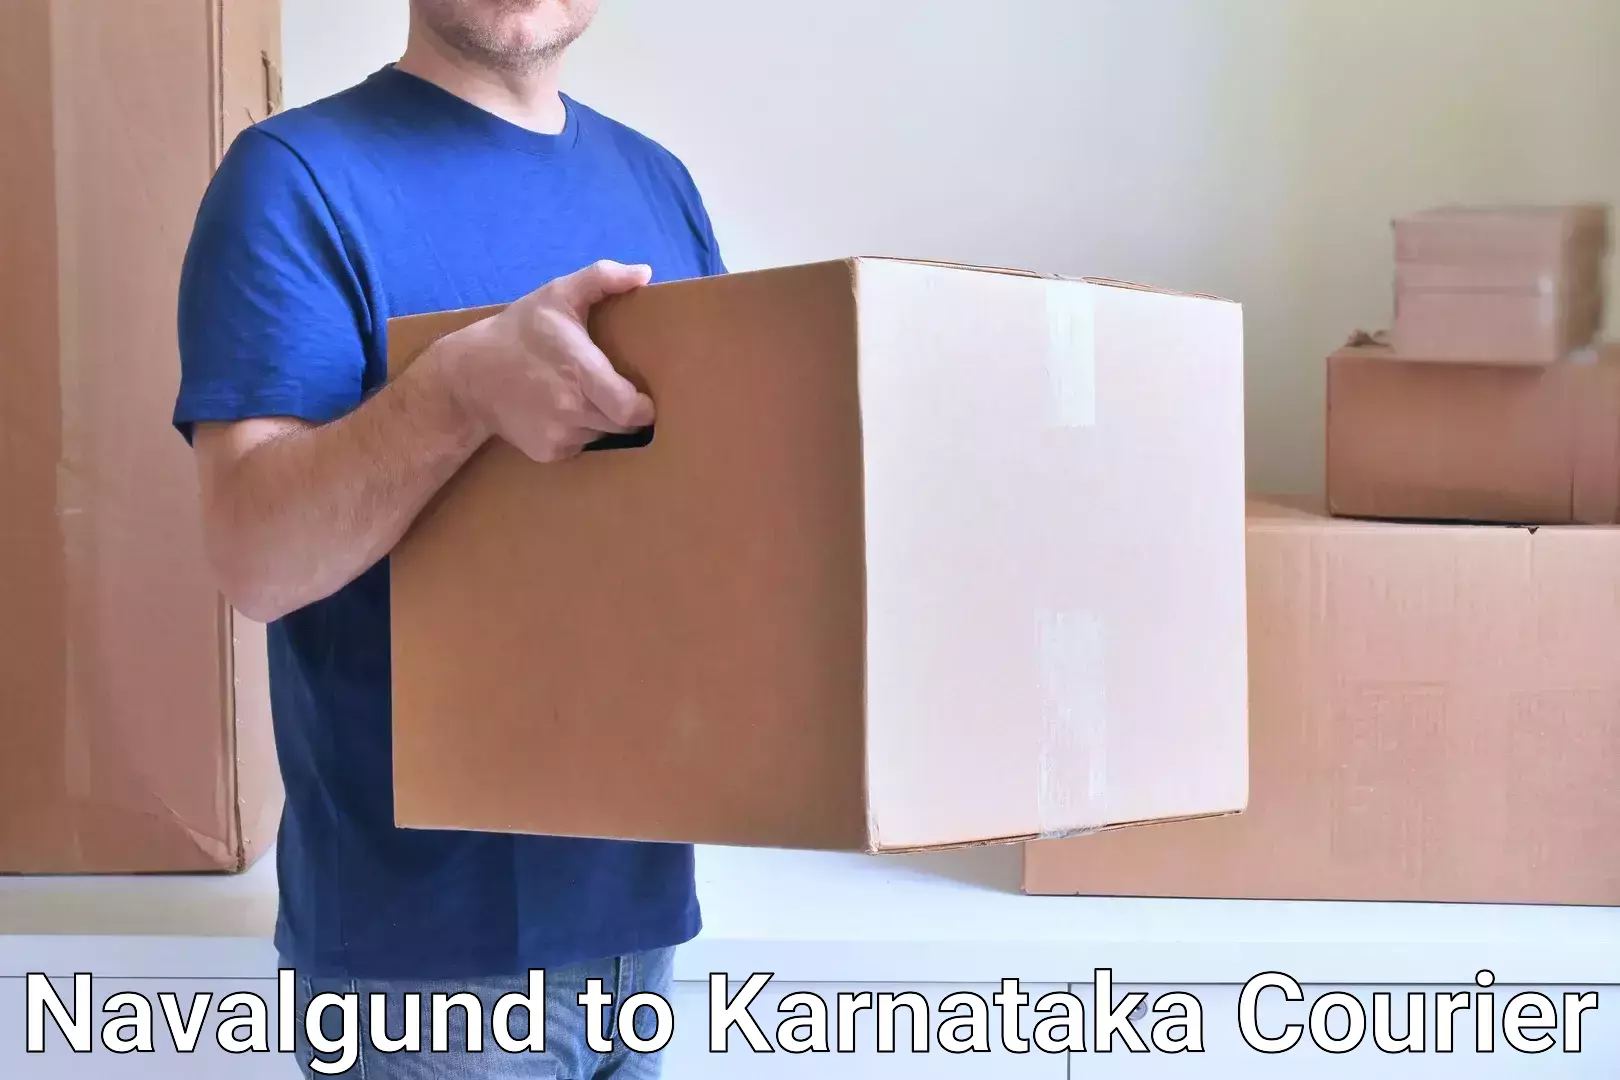 Lightweight parcel options Navalgund to Doddaballapura